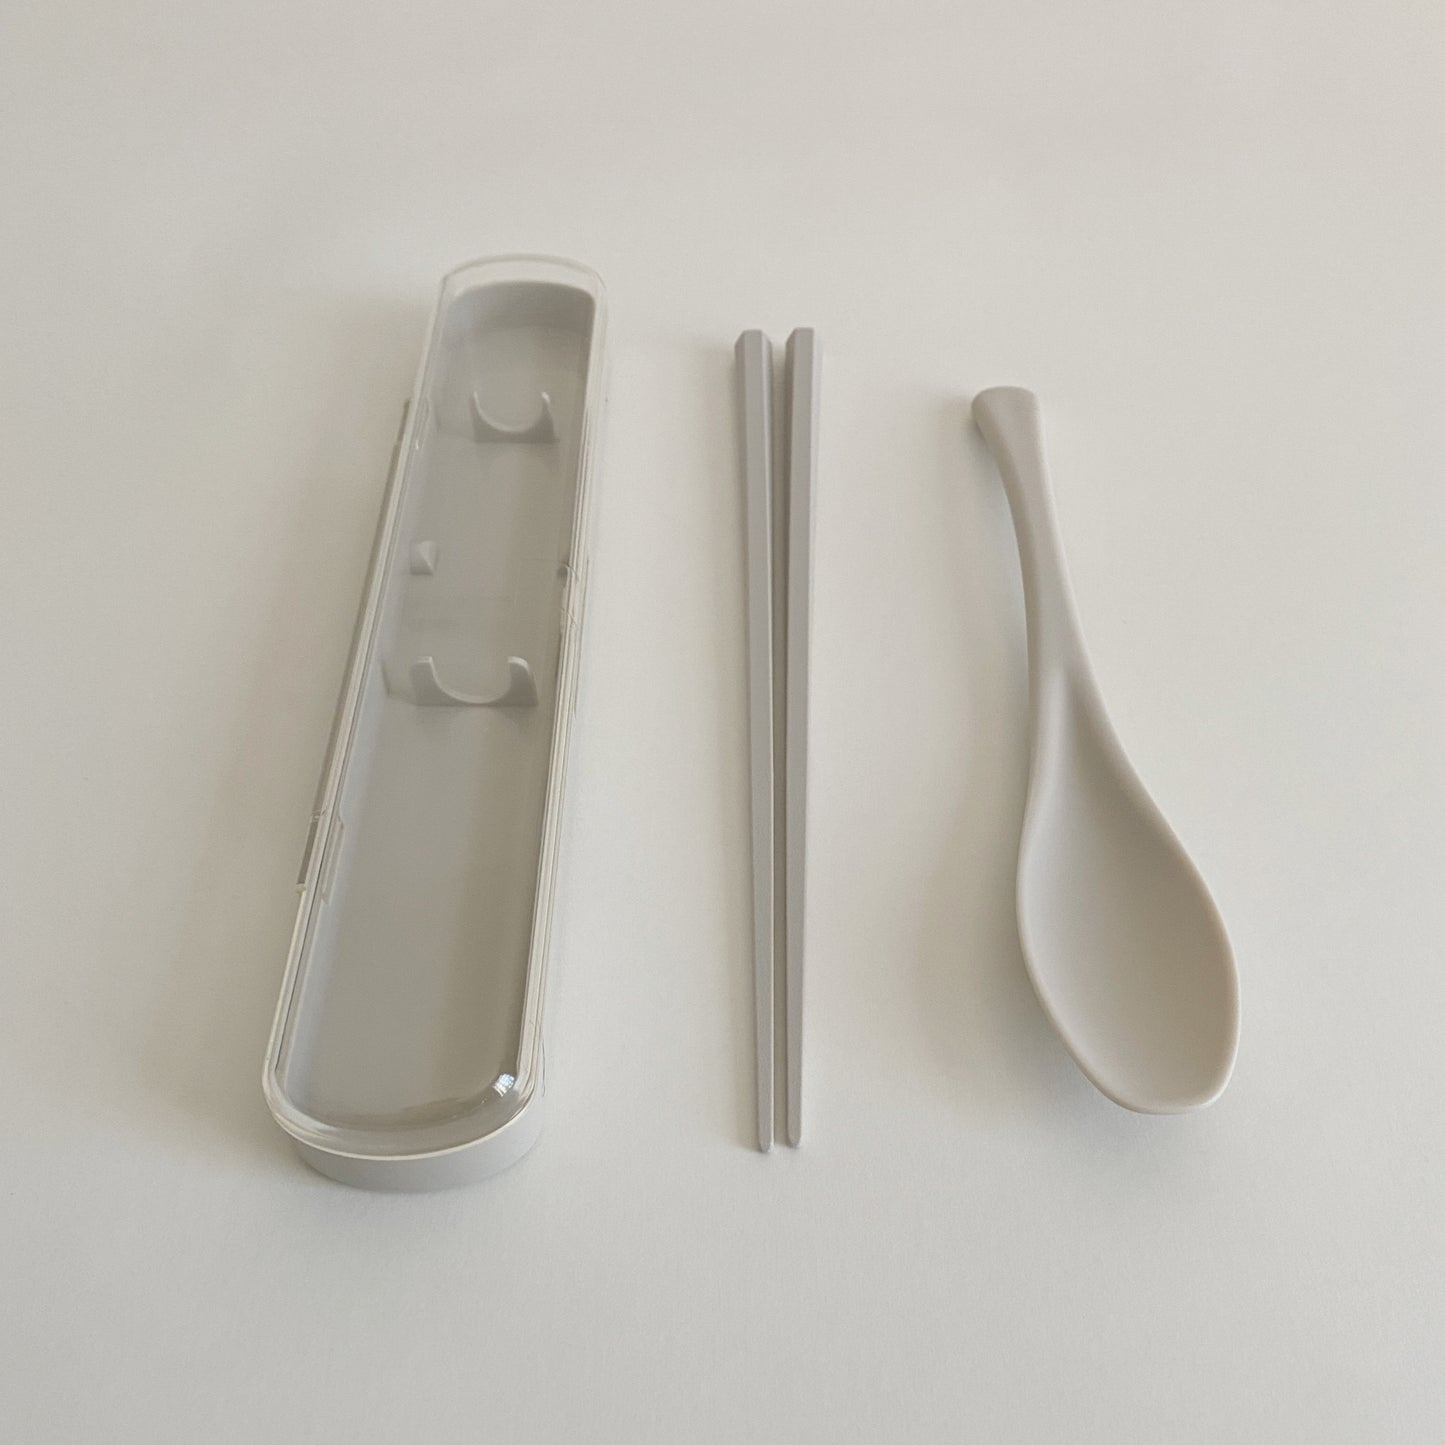 TAB LAB : spoon and chopsticks set